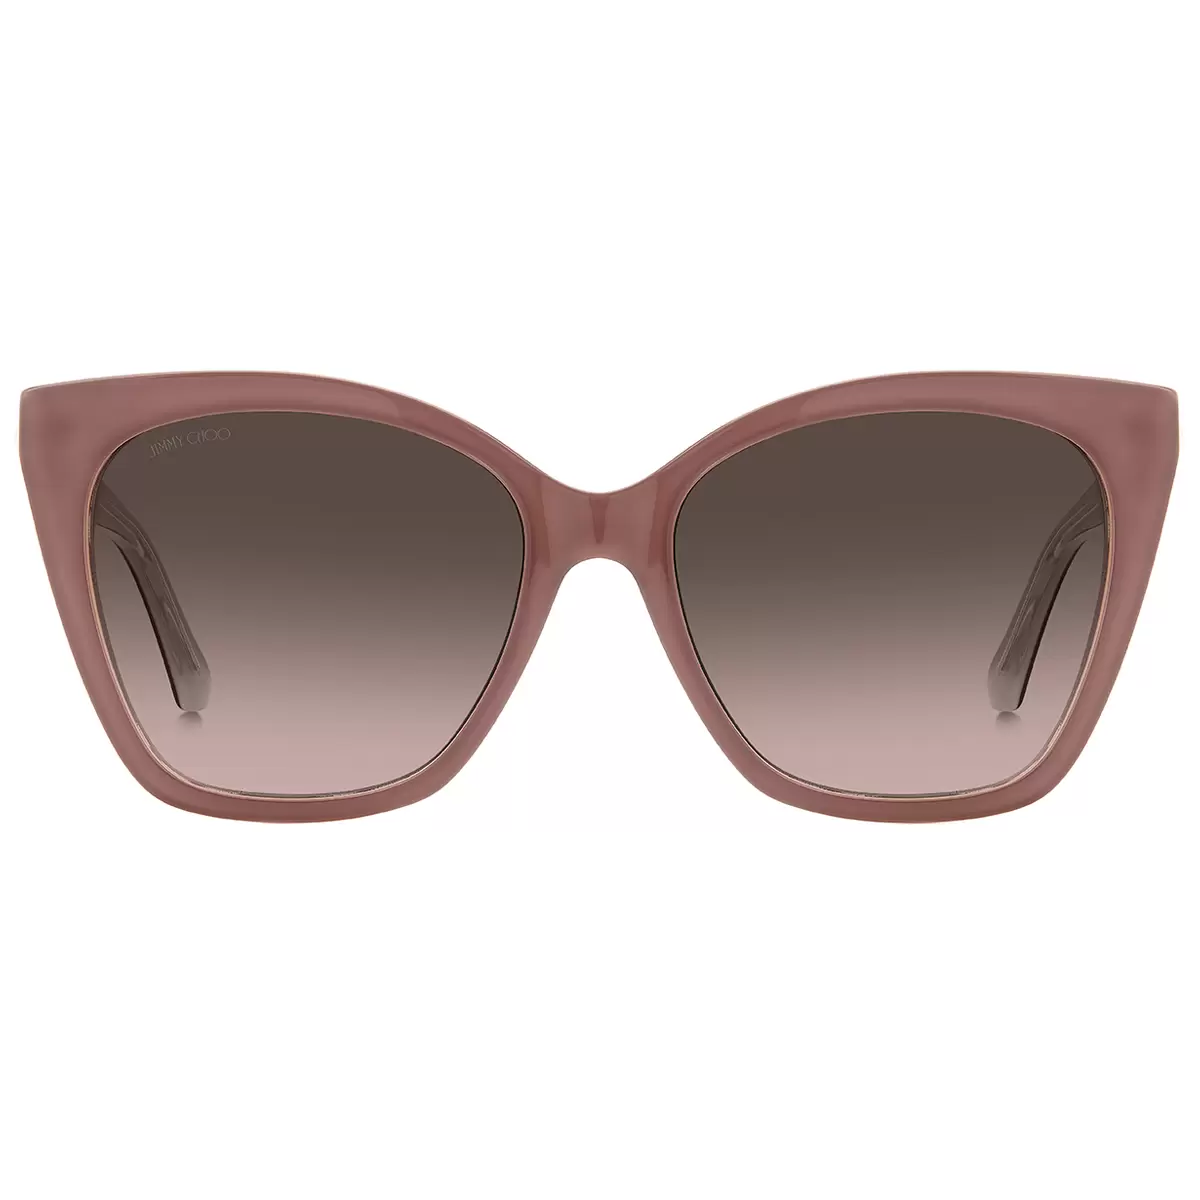 Jimmy Choo Rua/G/S Women's Sunglasses